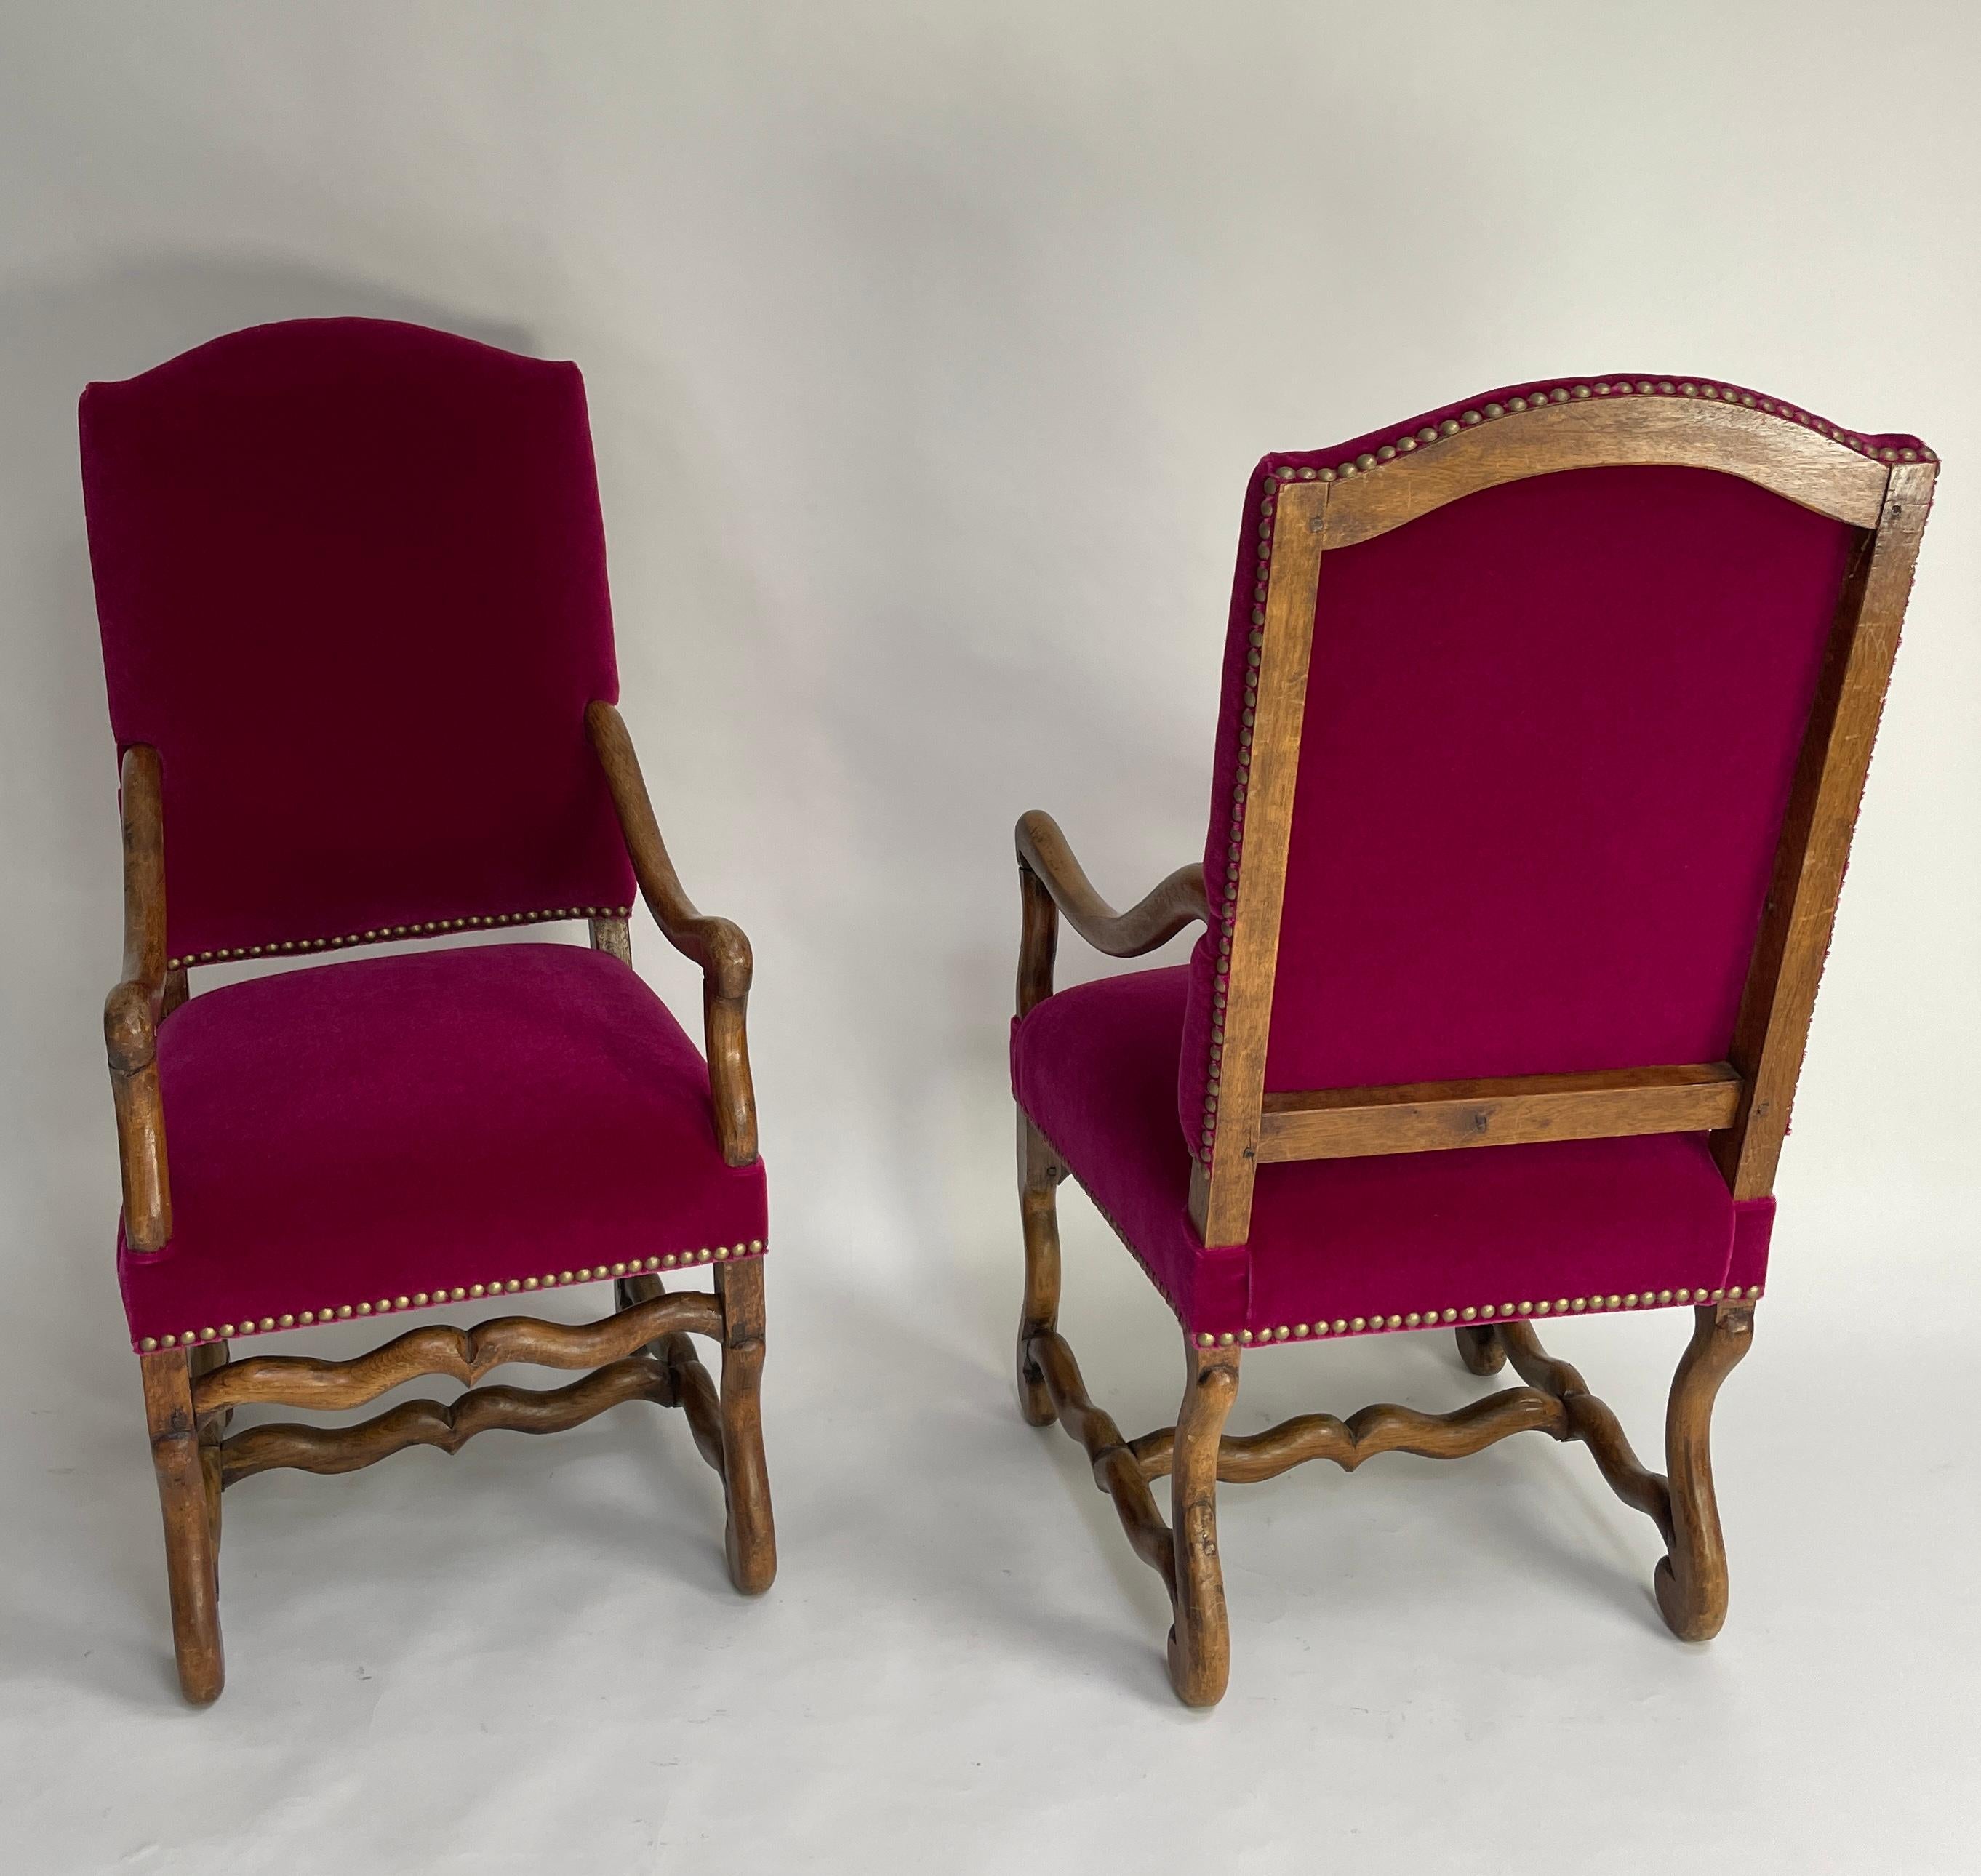 Paire de fauteuils Os de Mouton. Style Louis XIII. Fabriqué vers 1890.
Recouvert de Mohair Pierre Frey.  Les chaises sont situées dans notre salle d'exposition à New York.